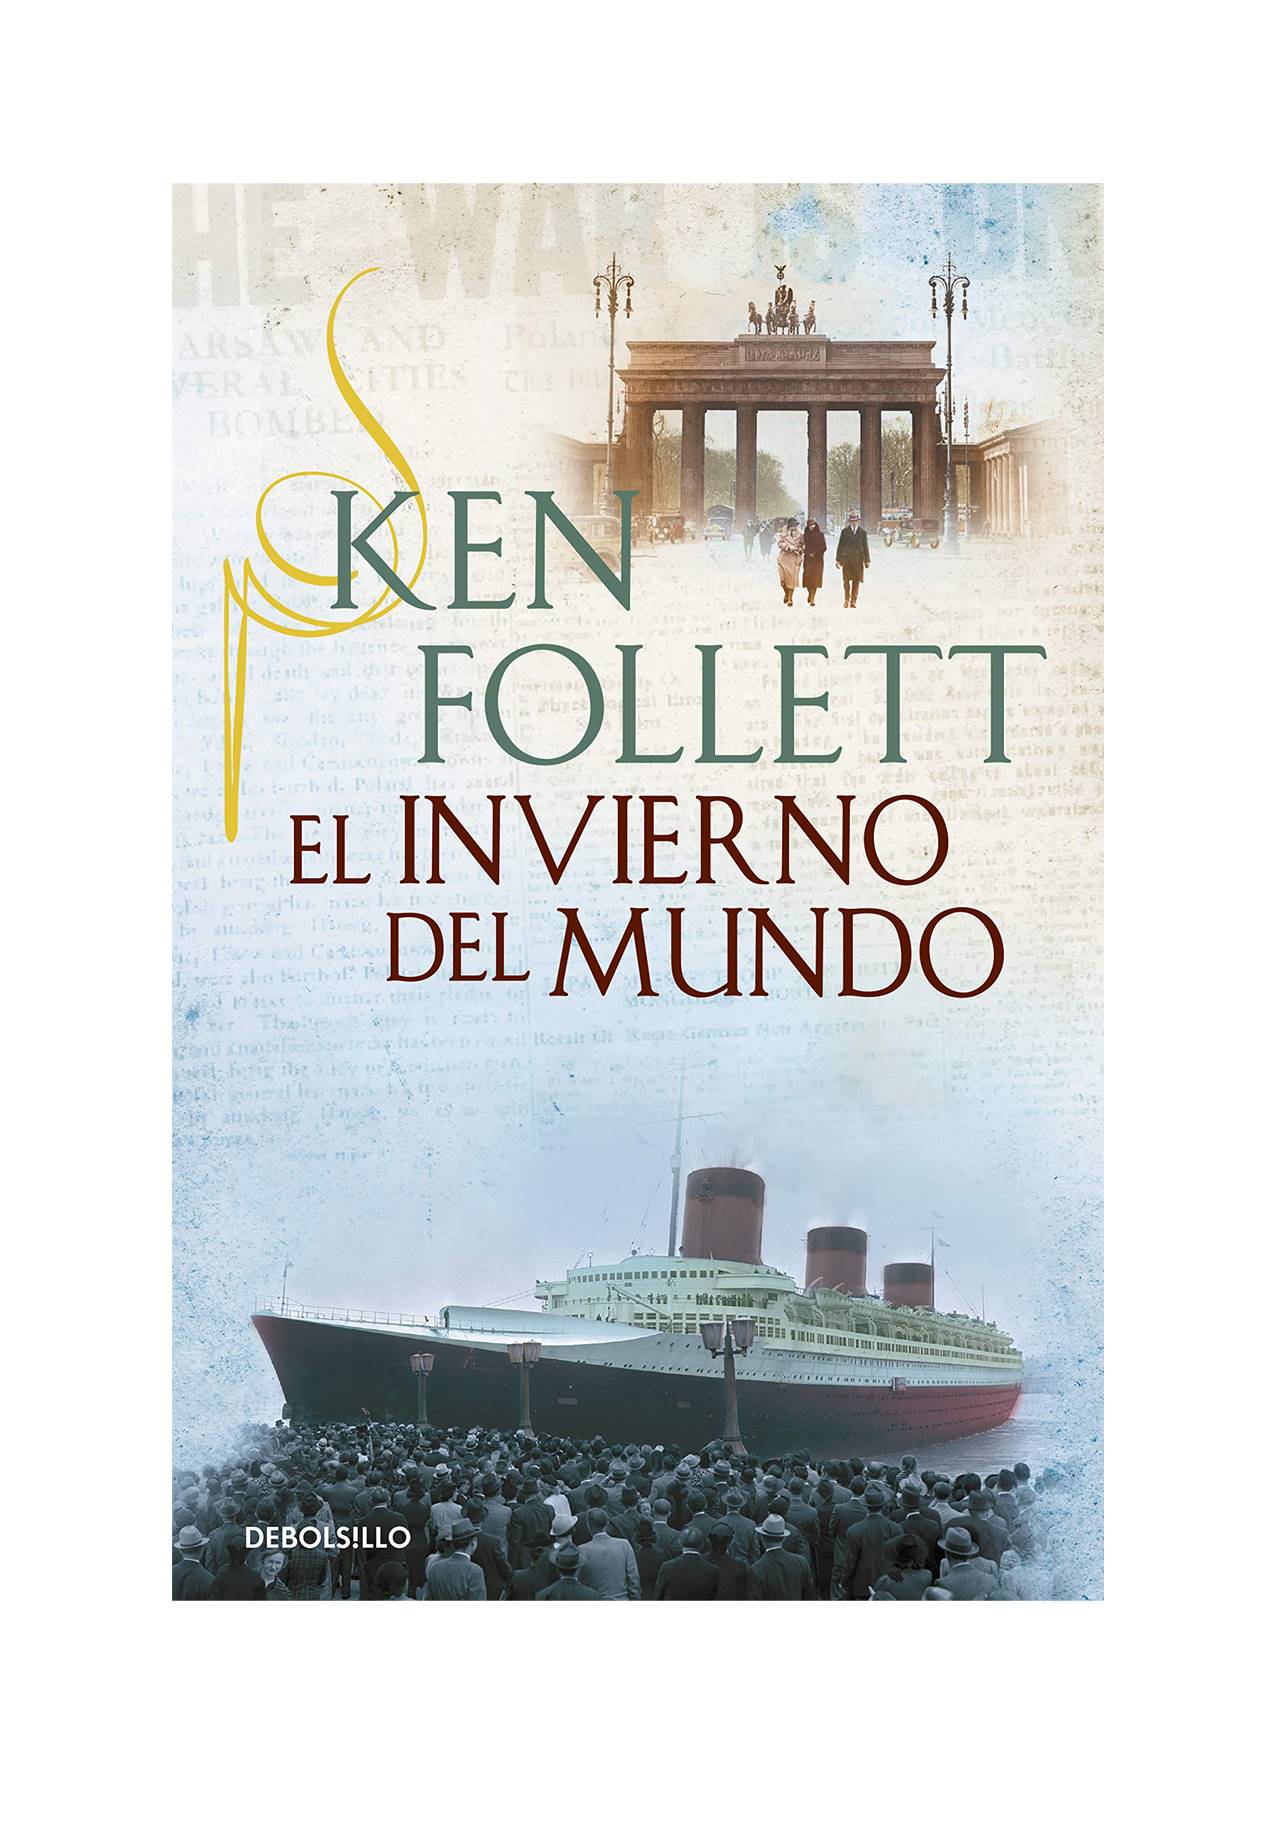 Novelas históricas imprescindibles: El invierno del mundo de Ken Follett (2012, Plaza & Janes Editores)